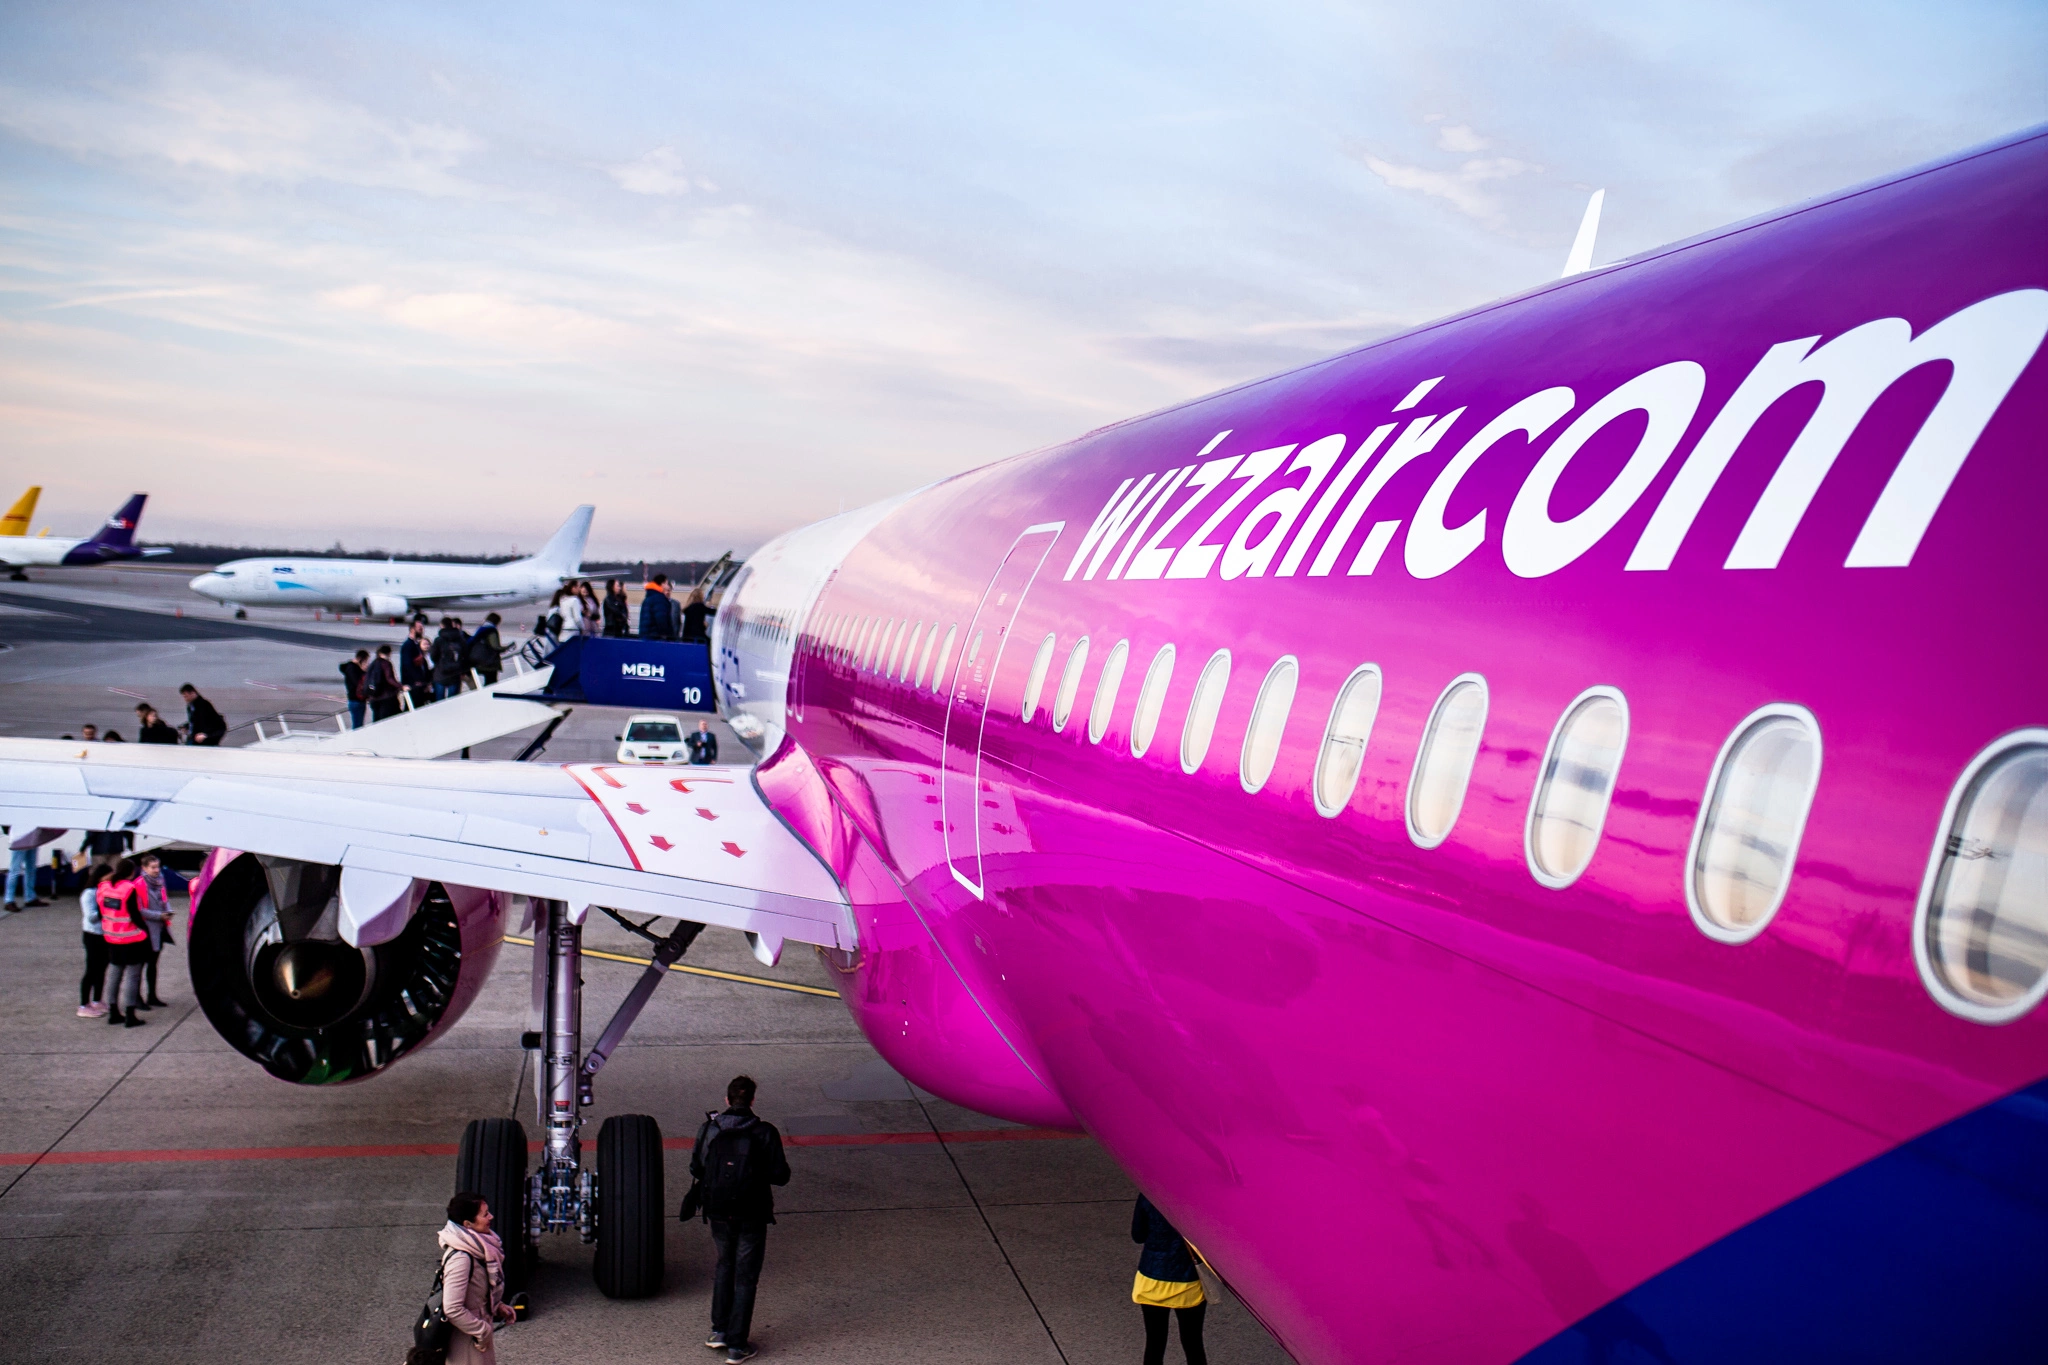 Elindult a Wizz Air harmadik járata Szaúd-Arábiába